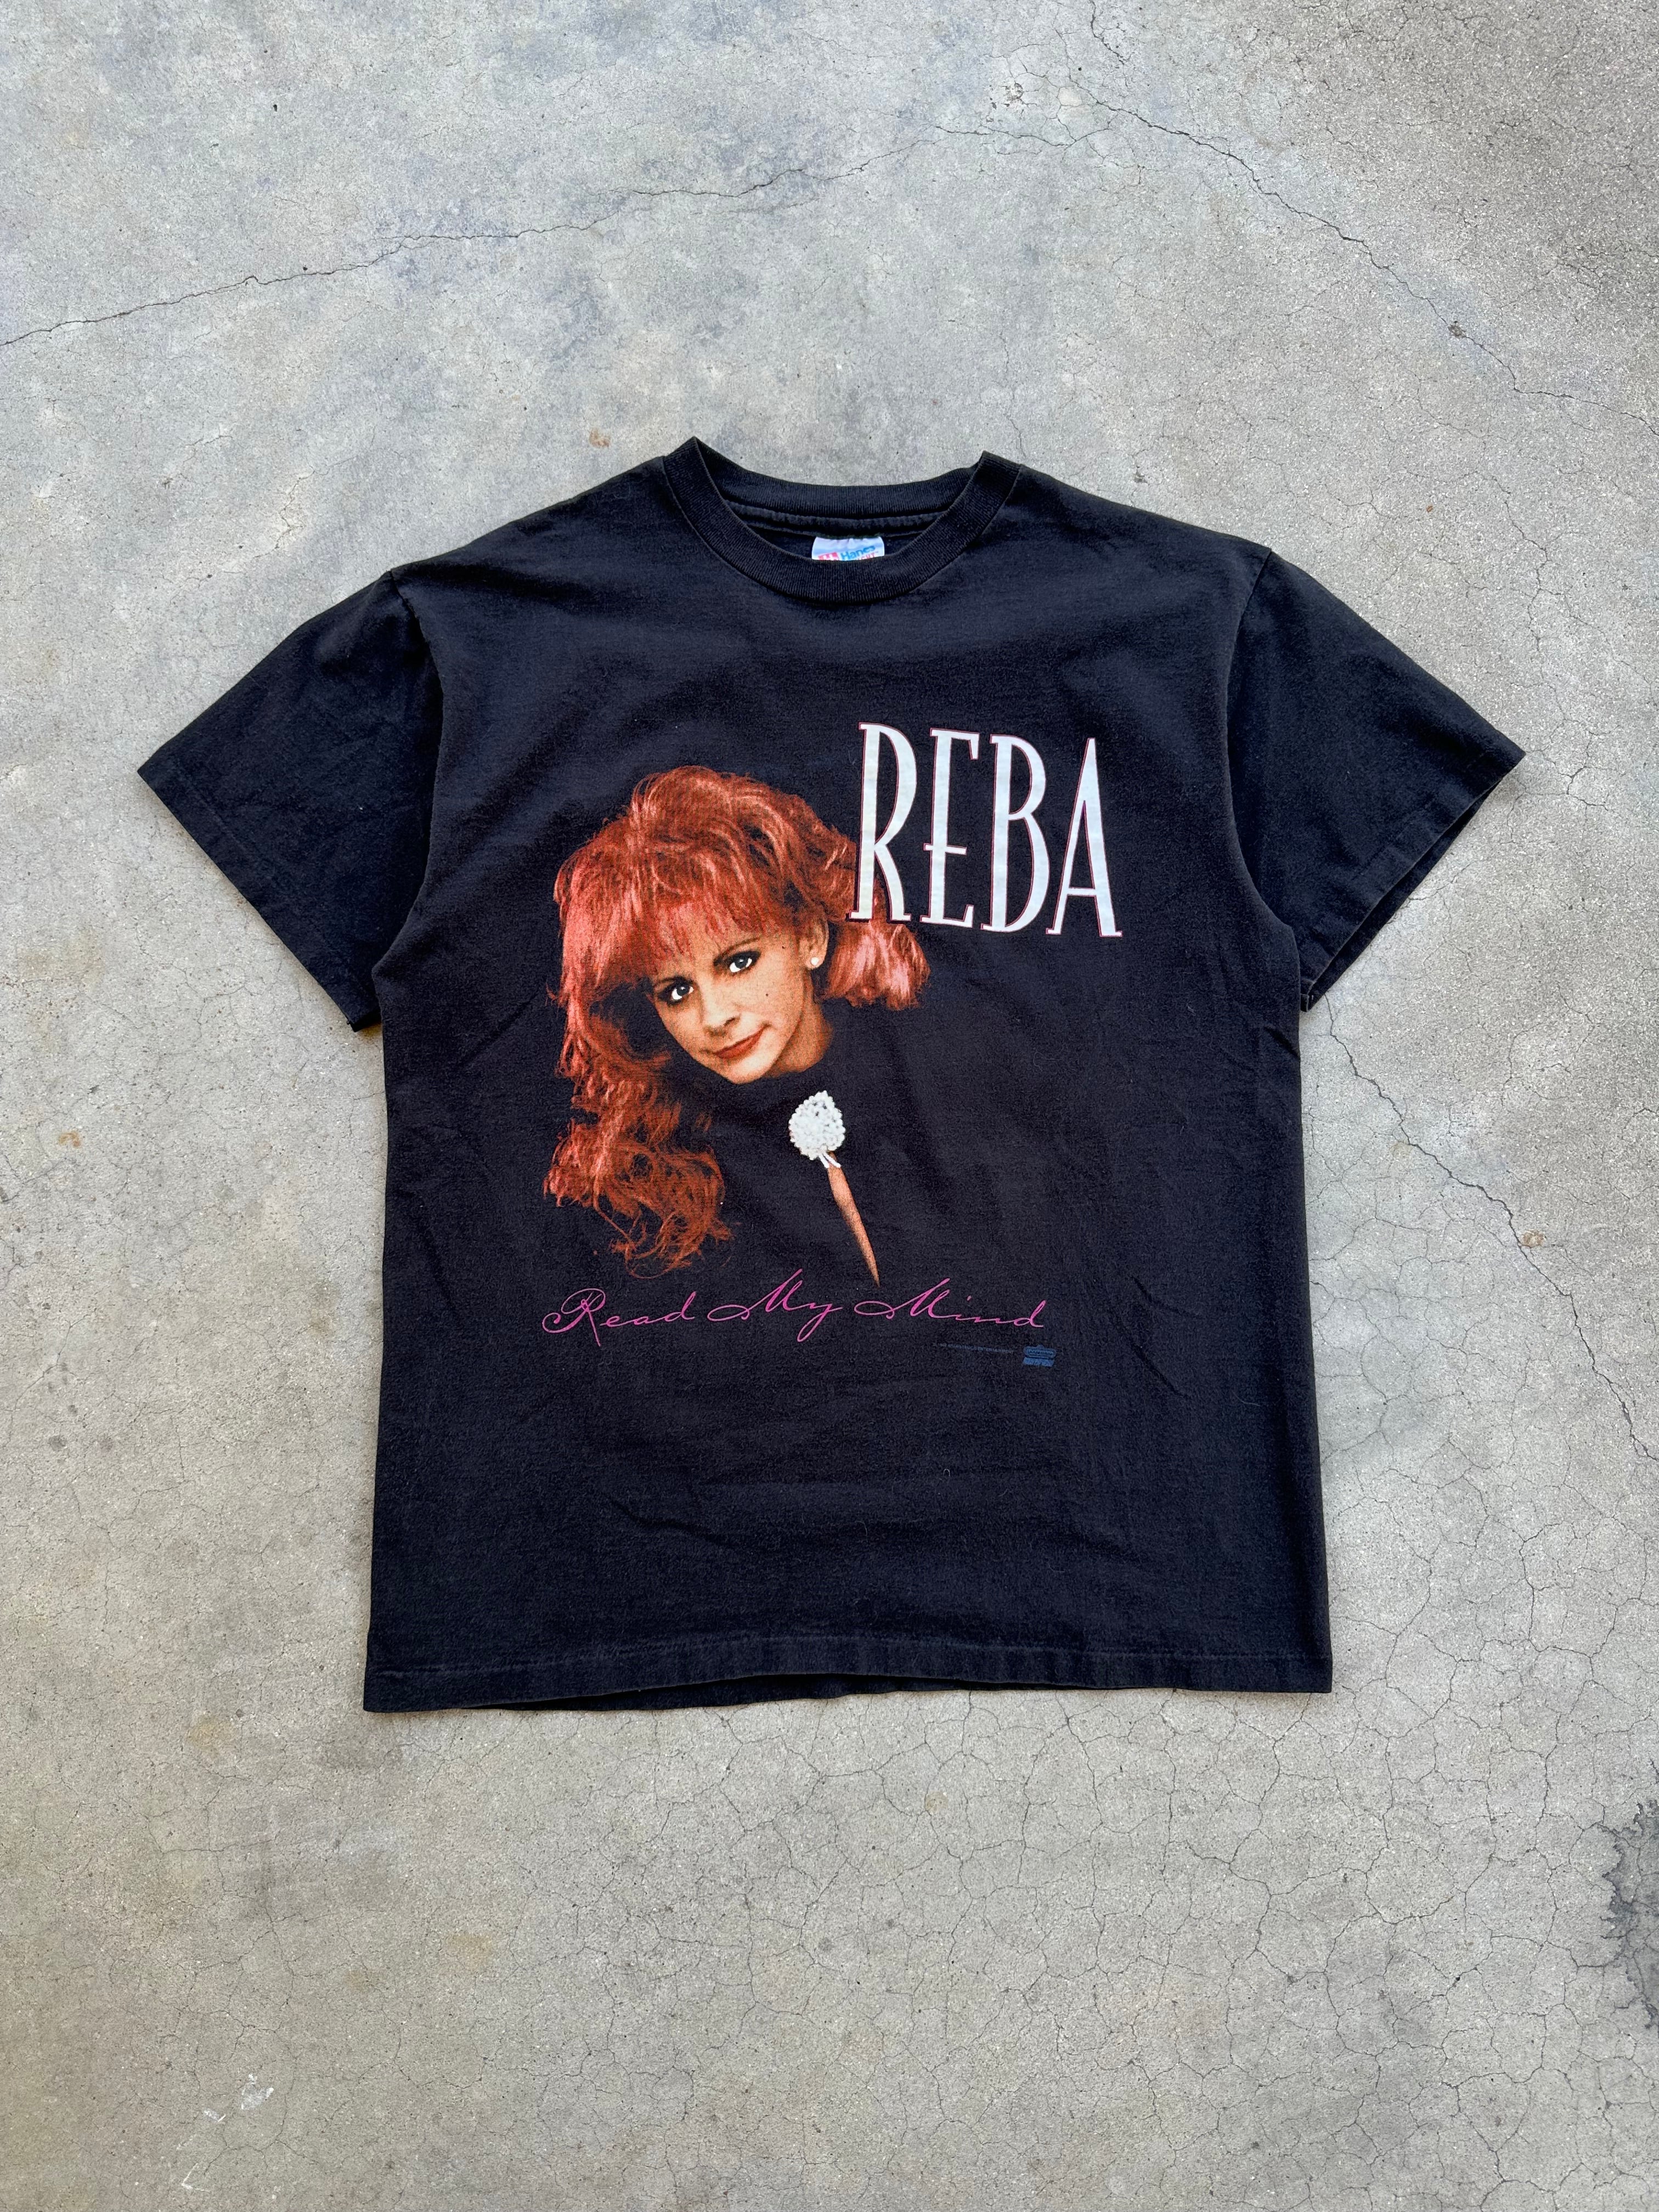 1990s Reba Read My Mind T-Shirt (M)